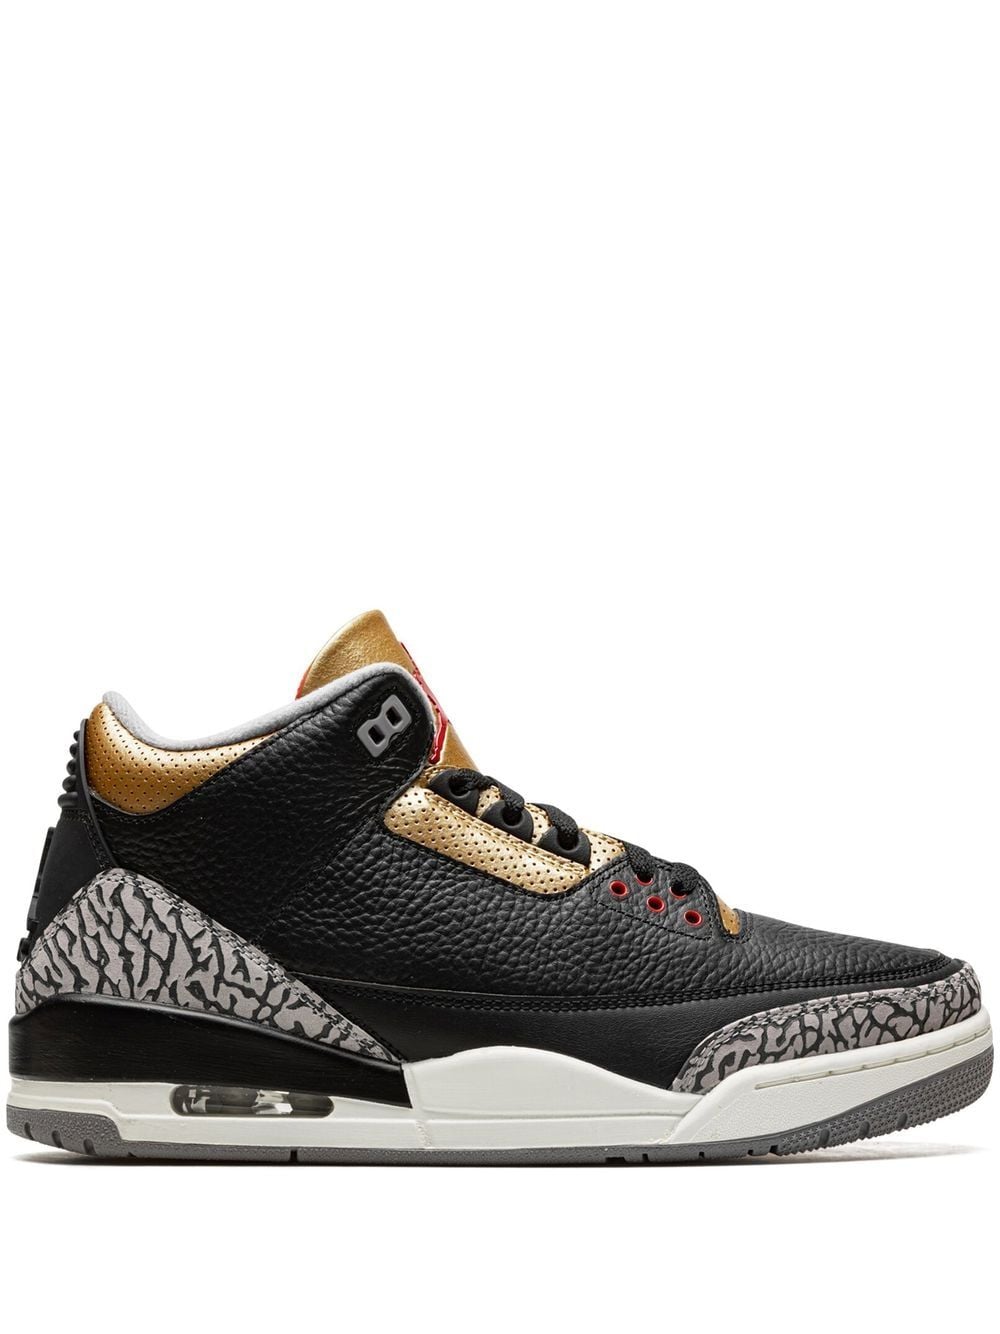 Jordan Air Jordan 3 sneakers - Black